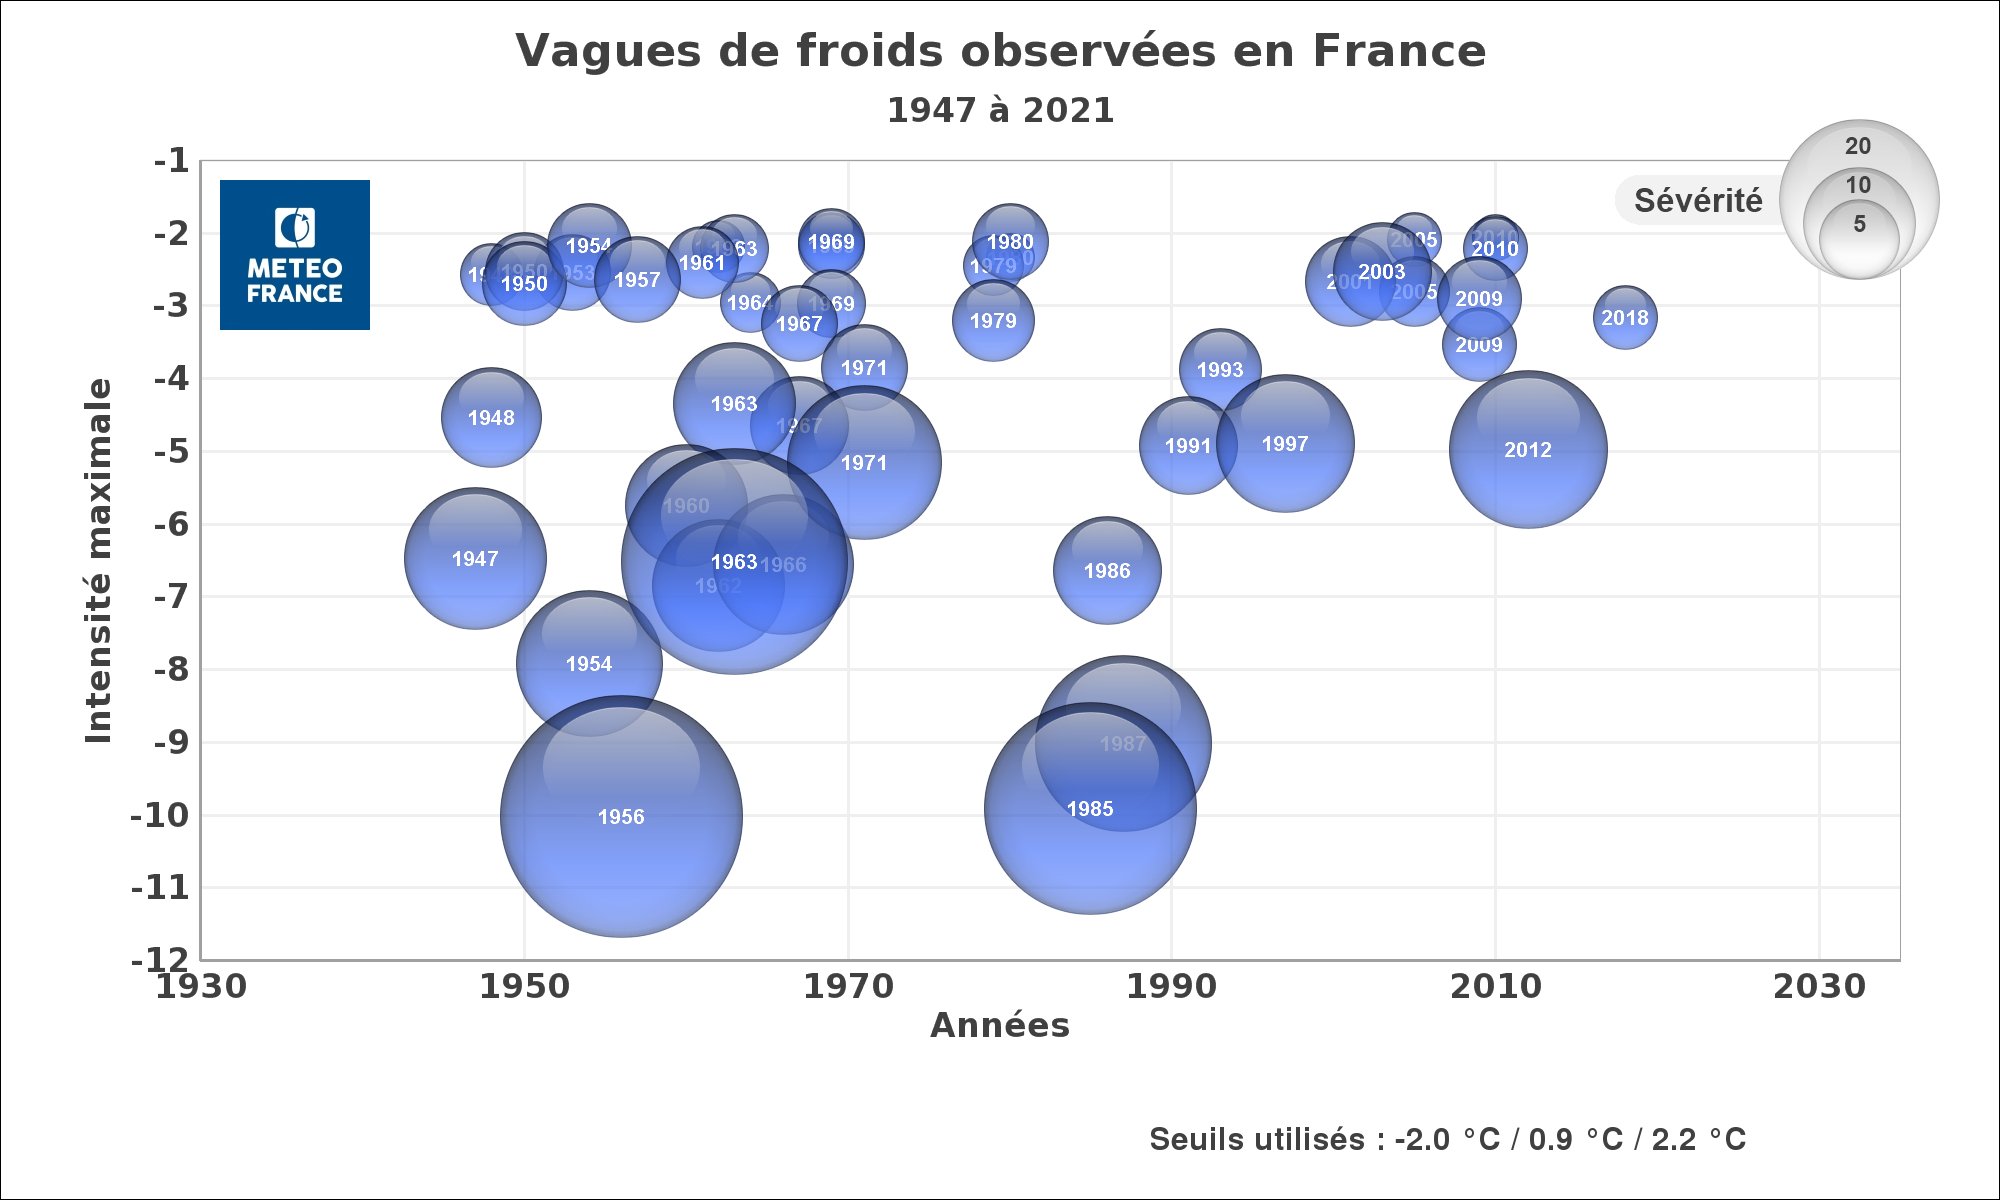  Les vagues de froid en France sur la période 1947-2021.